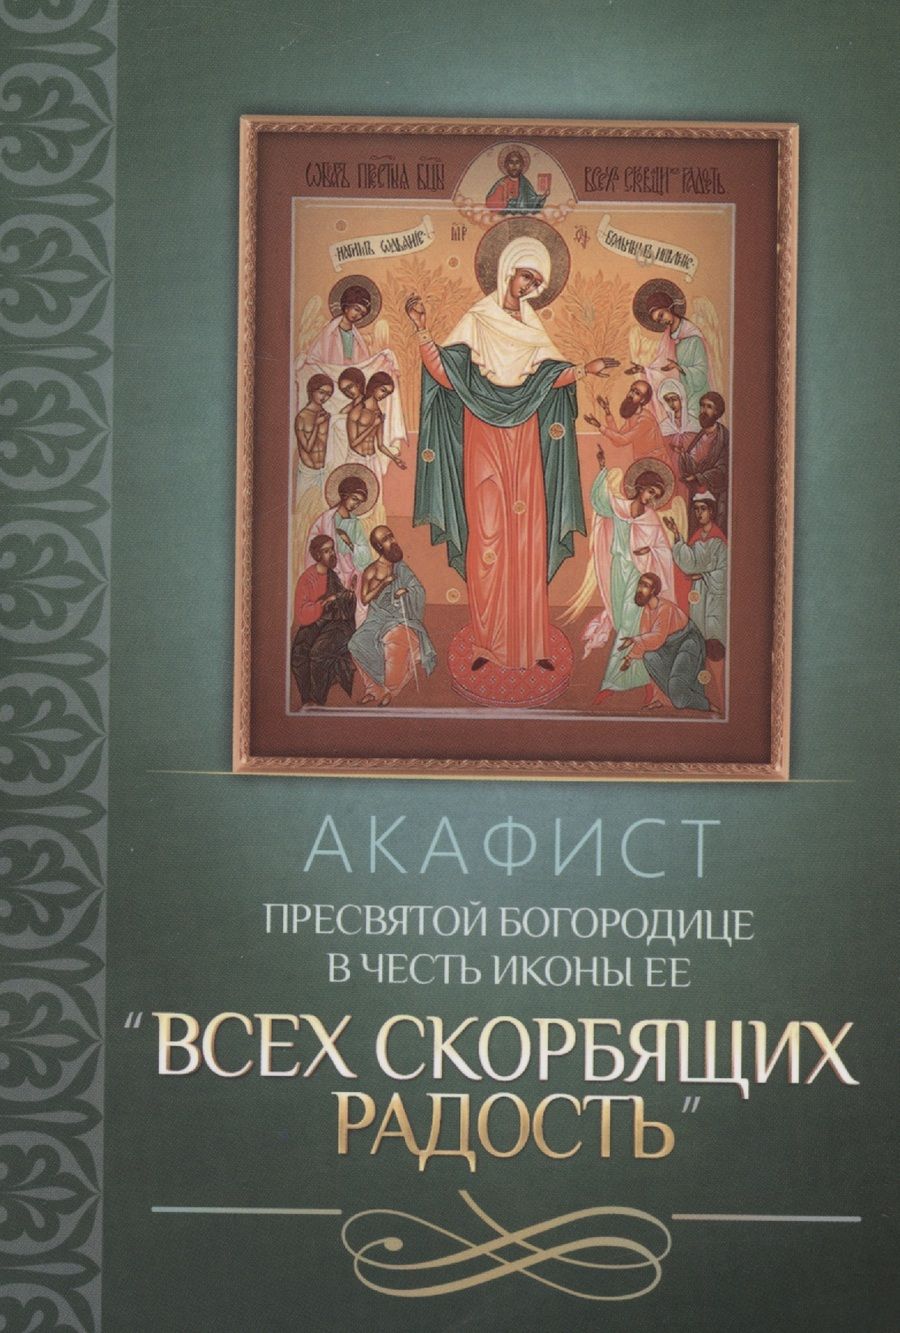 Обложка книги "Акафист Пресвятой Богородице в честь иконы Ее "Всех скорбящих Радость""